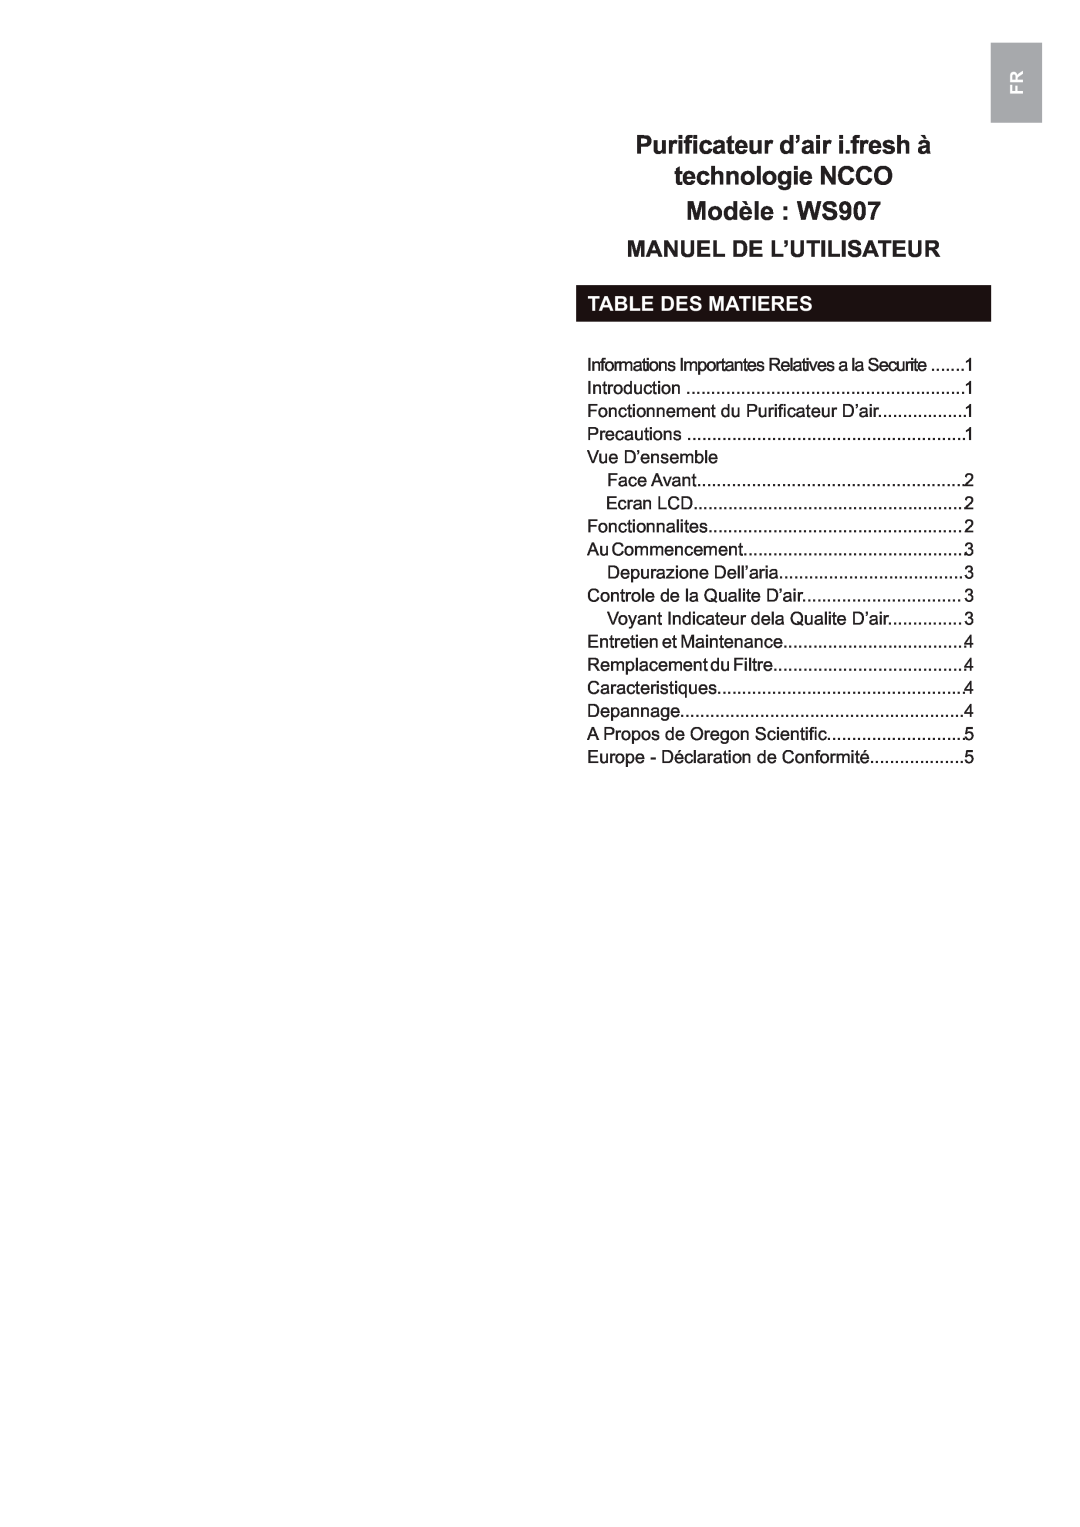 Oregon Scientific user manual technologie NCCO, Modèle WS907, Manuel De L’Utilisateur, Table Des Matieres 